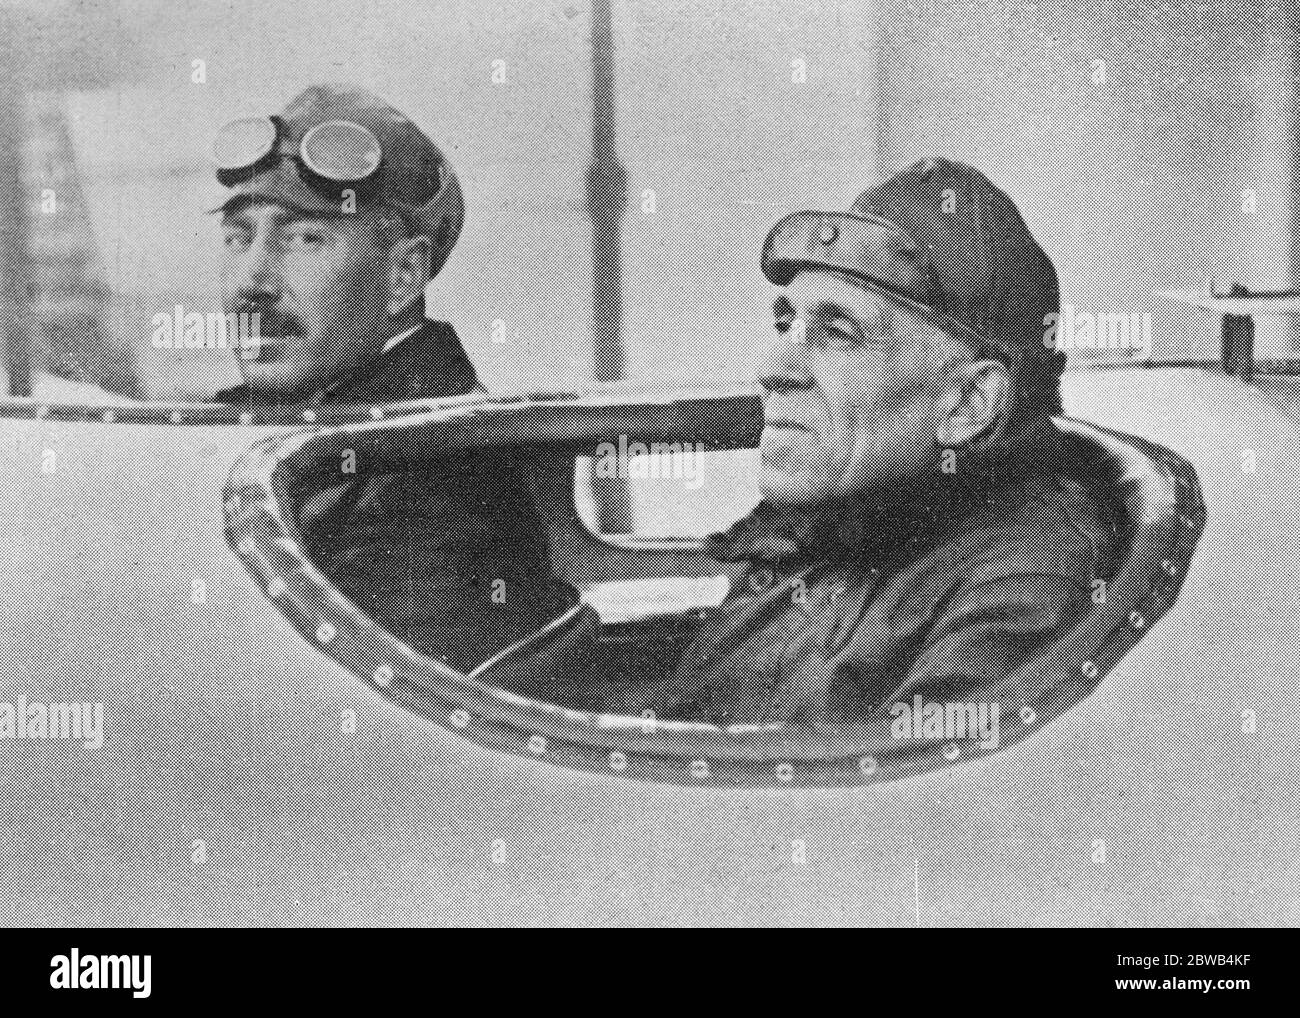 Gli airmen che hanno volato il comandante Atlantico Sacadura Cabral ( a sinistra ) e il capitano Gago Couthino gli airmen portoghesi , che sono atterrati in sicurezza a Pernambuco ( Brasile ) e hanno così completato il loro volo dall'Europa al Sudamerica 7 giugno 1922 Foto Stock